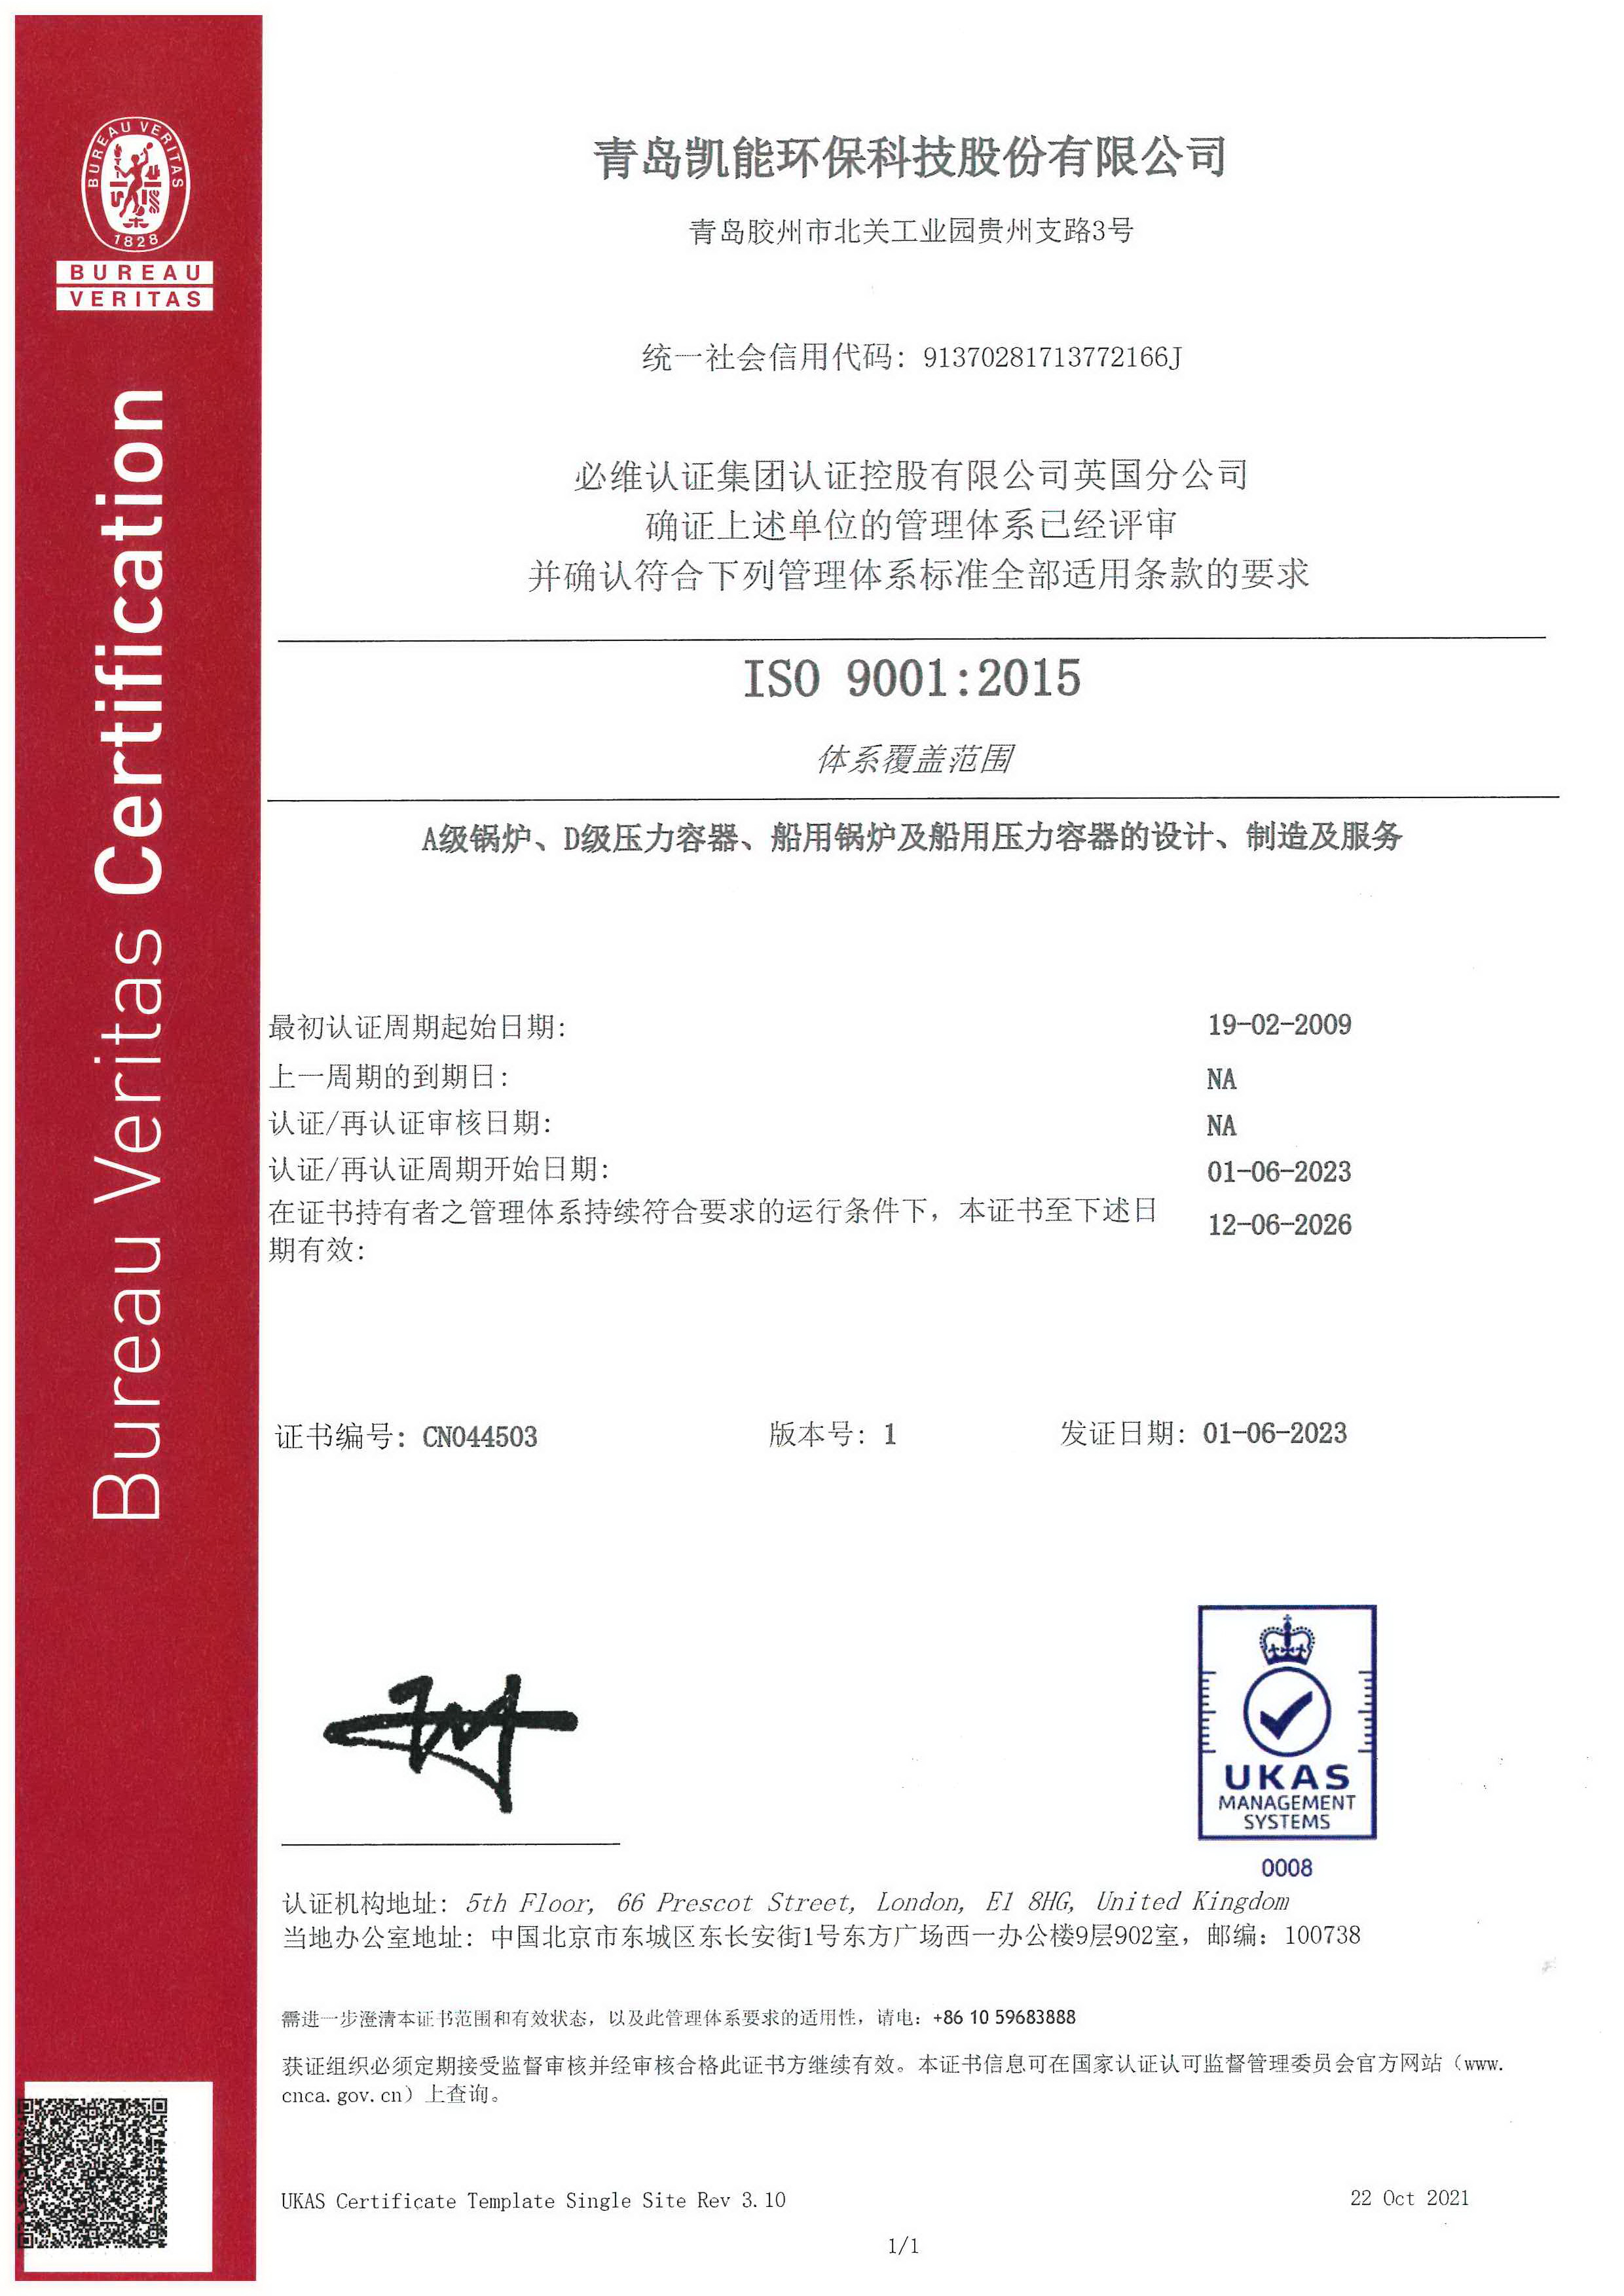 澳门威斯尼斯8883入口科技质量管理体系认证证书